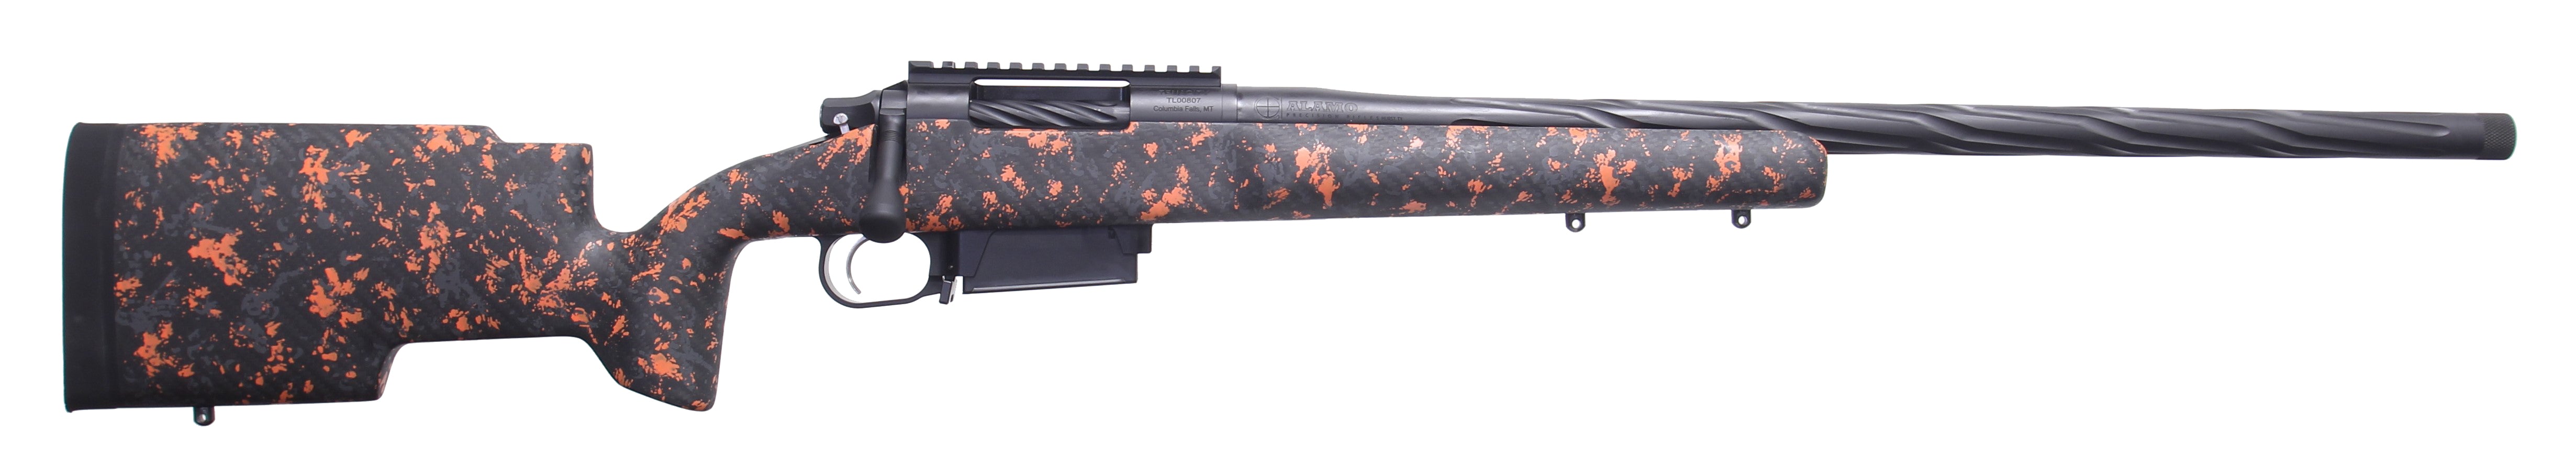 APR Ranger 223 Remington